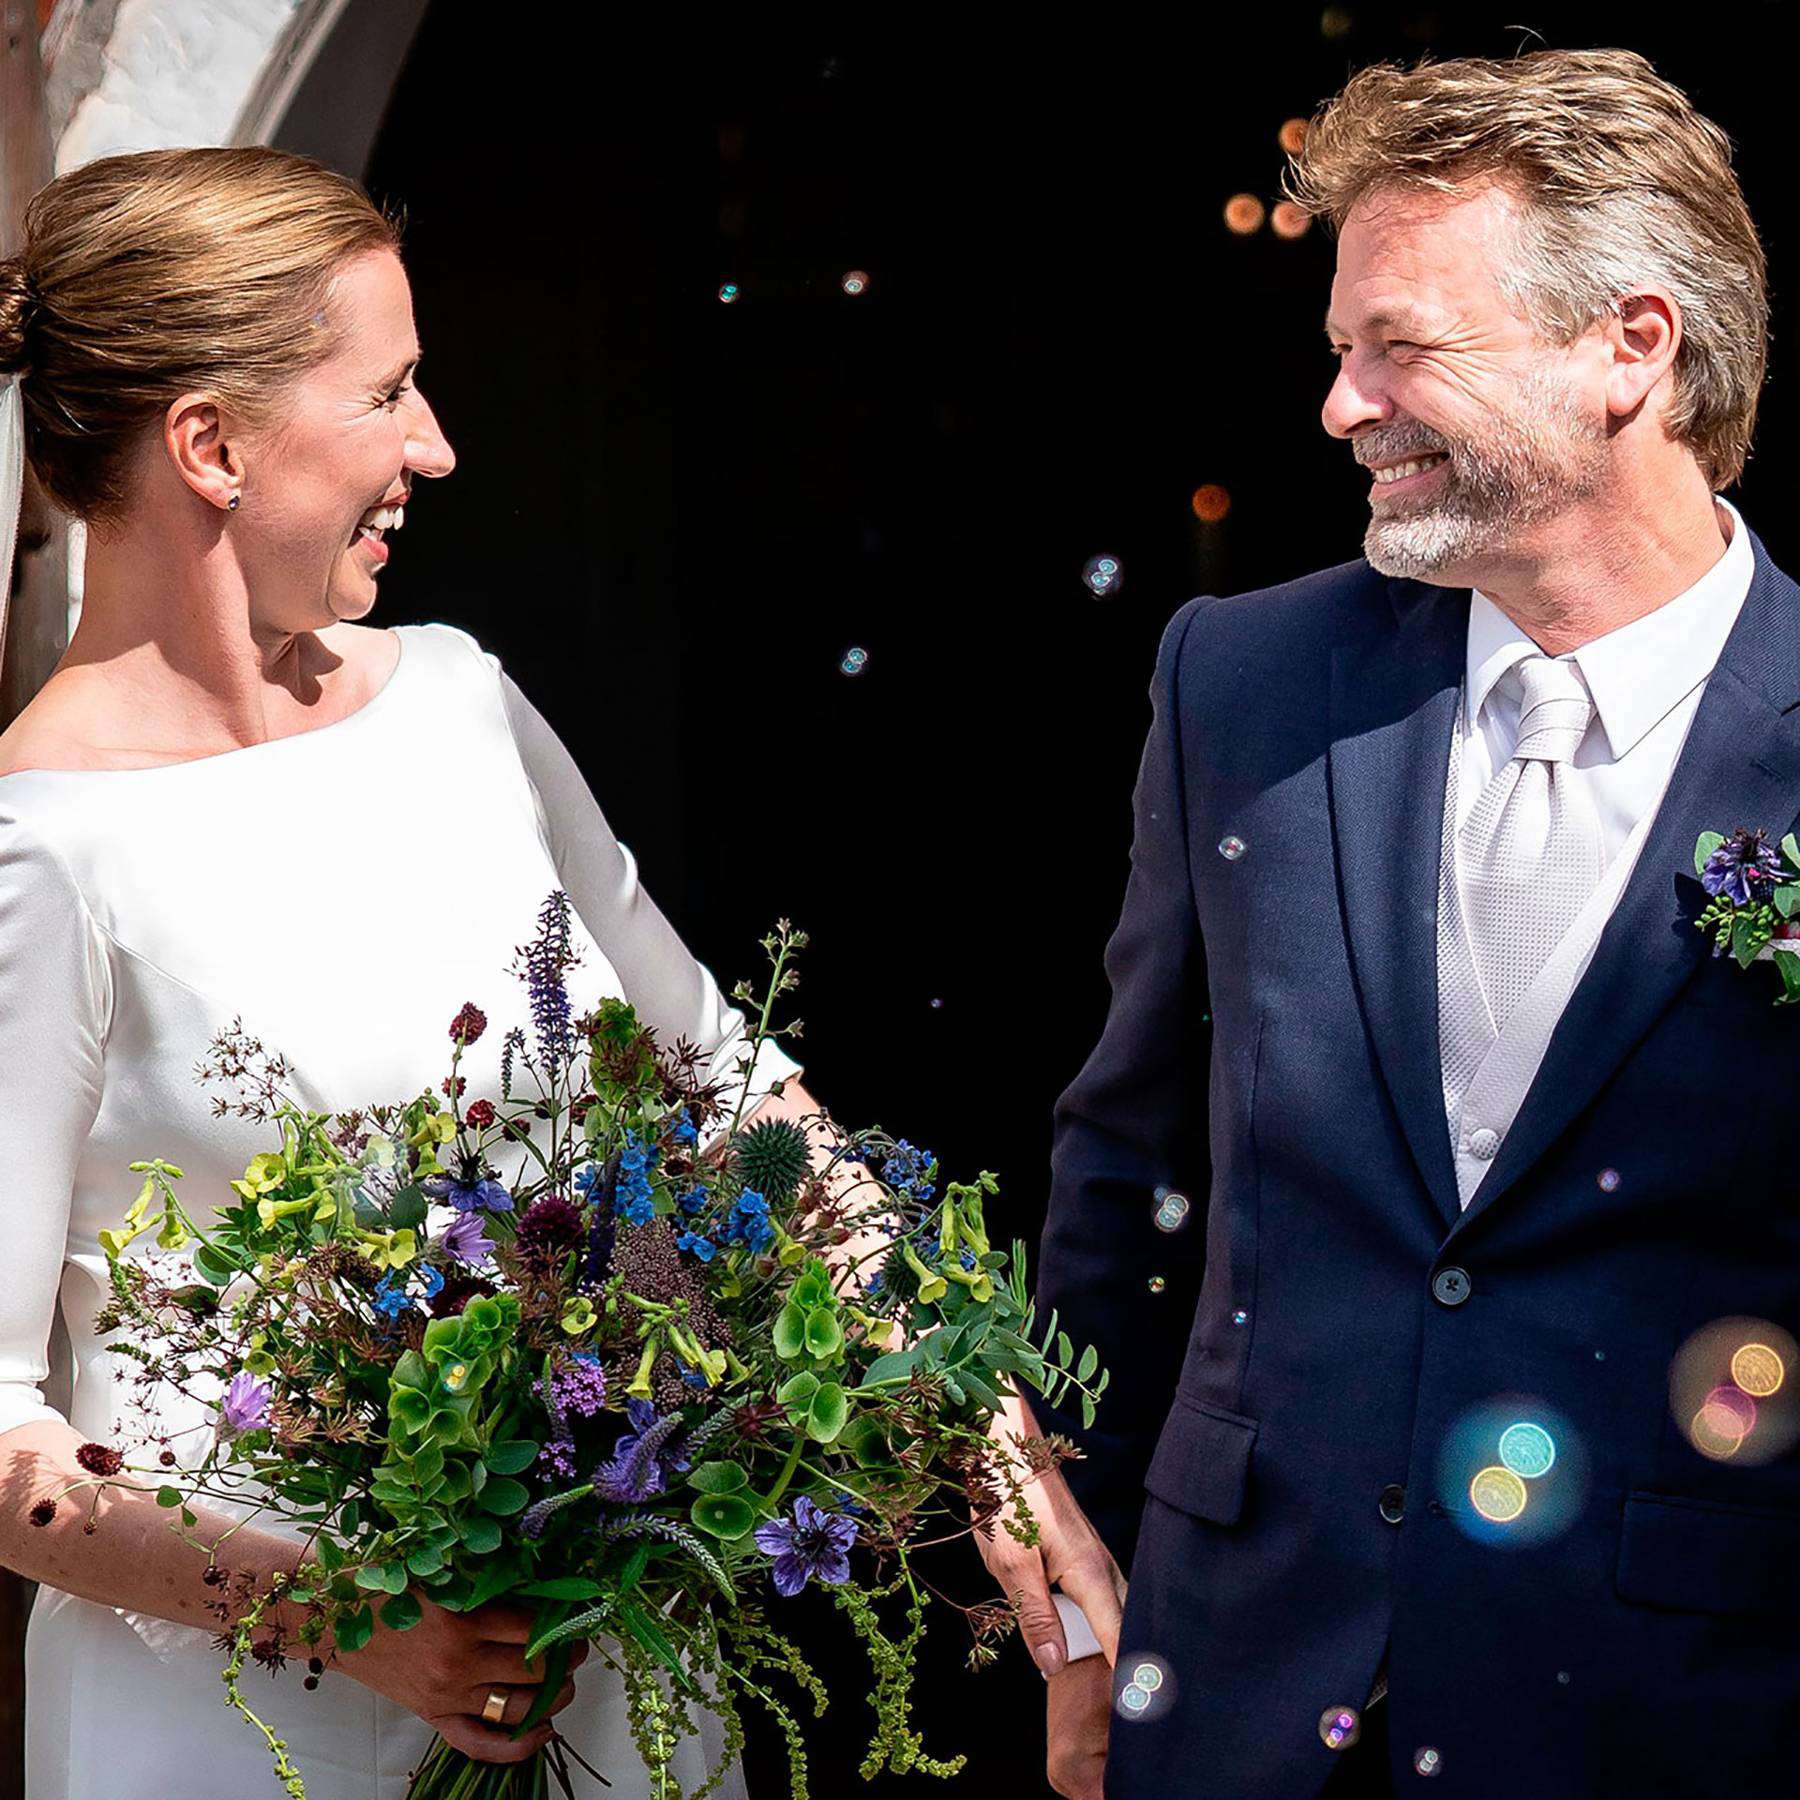 Le mariage du Premier ministre du Danemark